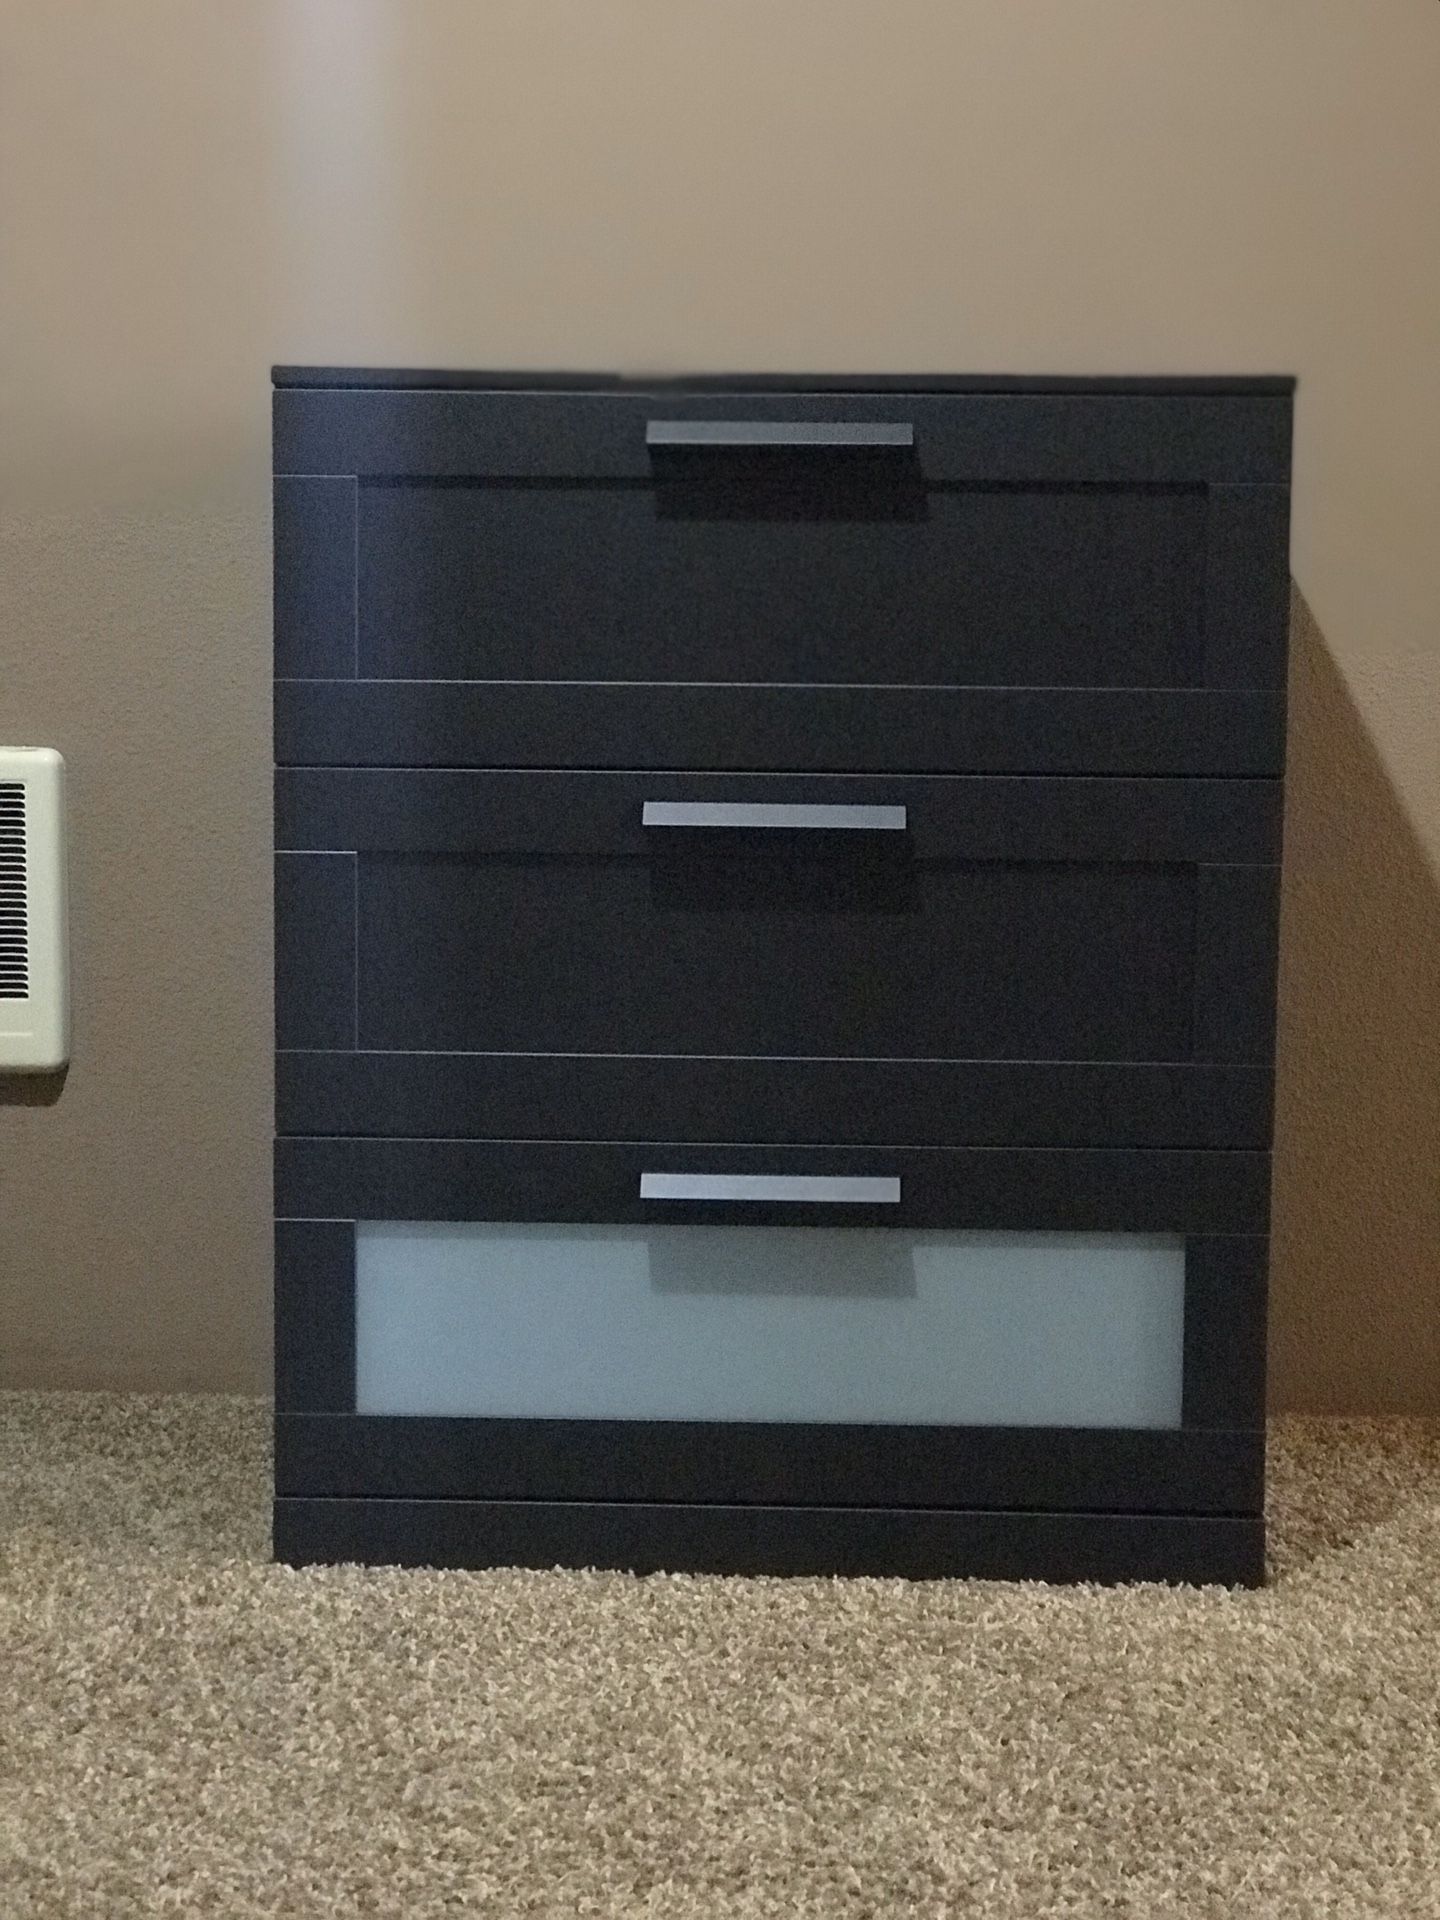 Brand new (Just Built) Dresser